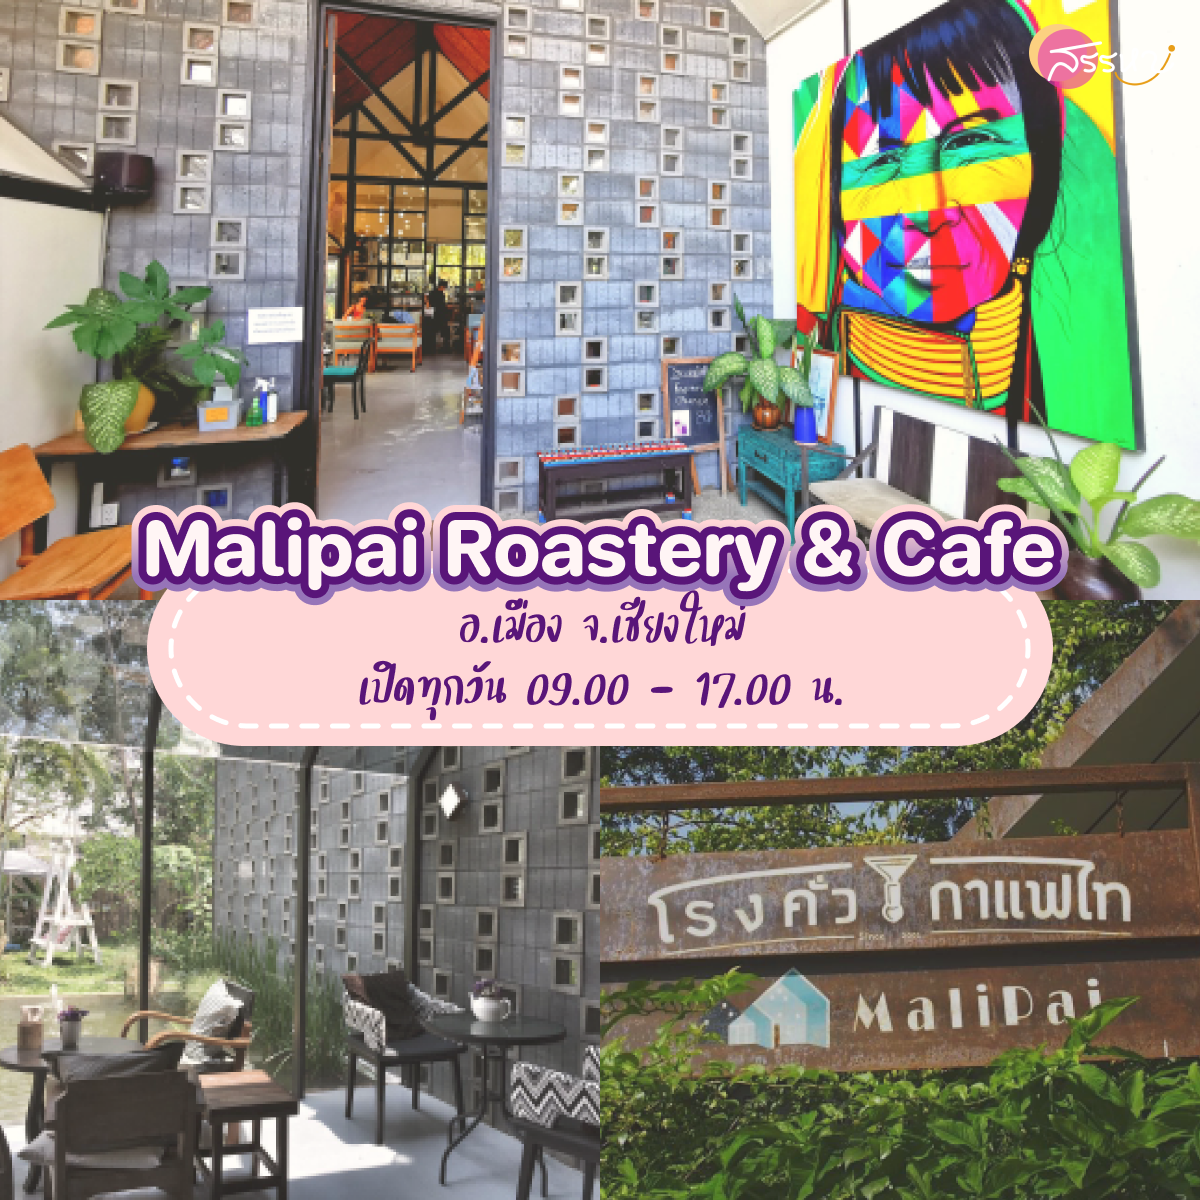 15 ที่เที่ยวเชียงใหม่ 2021-Malipai Roastery & Cafe